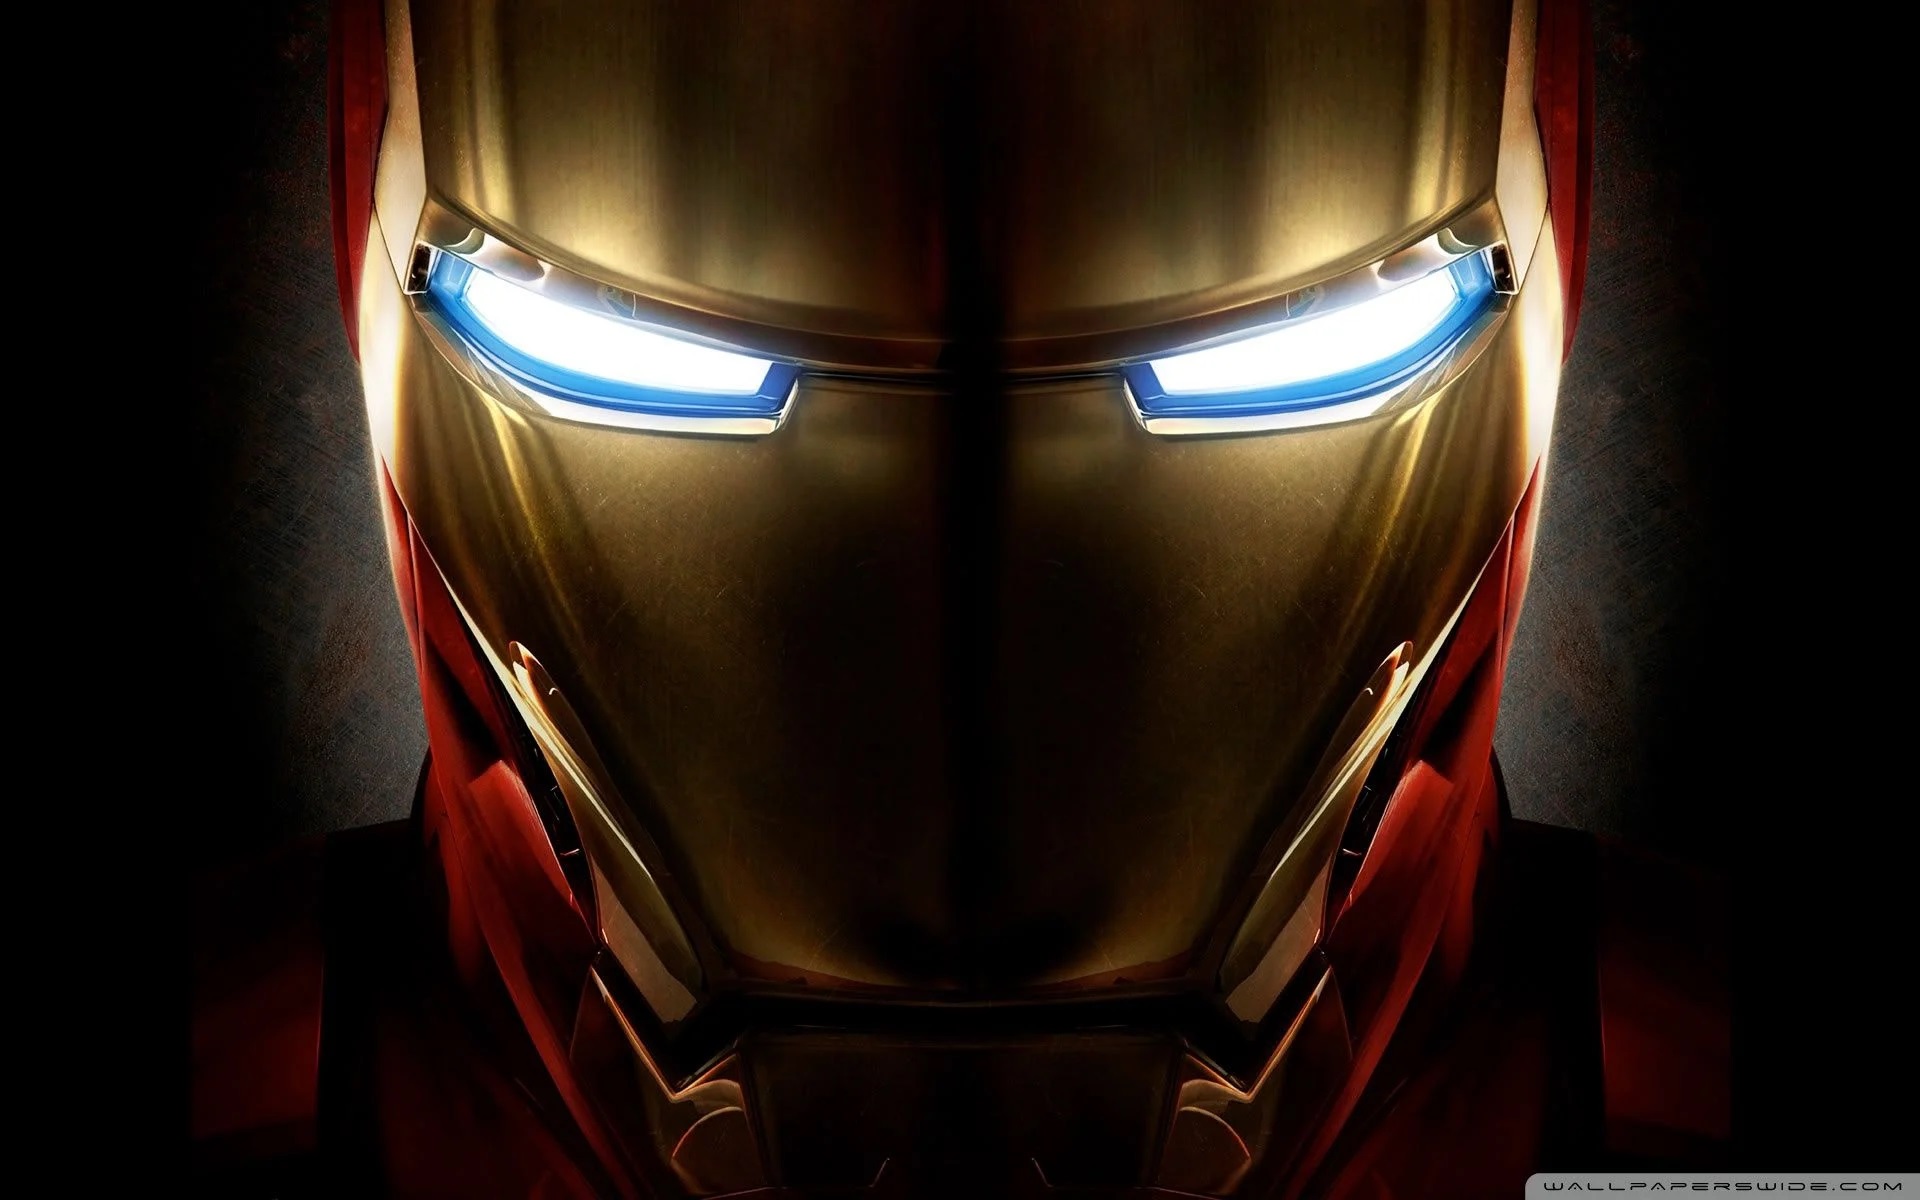 احتمالا بازی Iron Man شرکت EA هنوز در مراحل بسیار ابتدایی توسعه قرار دارد